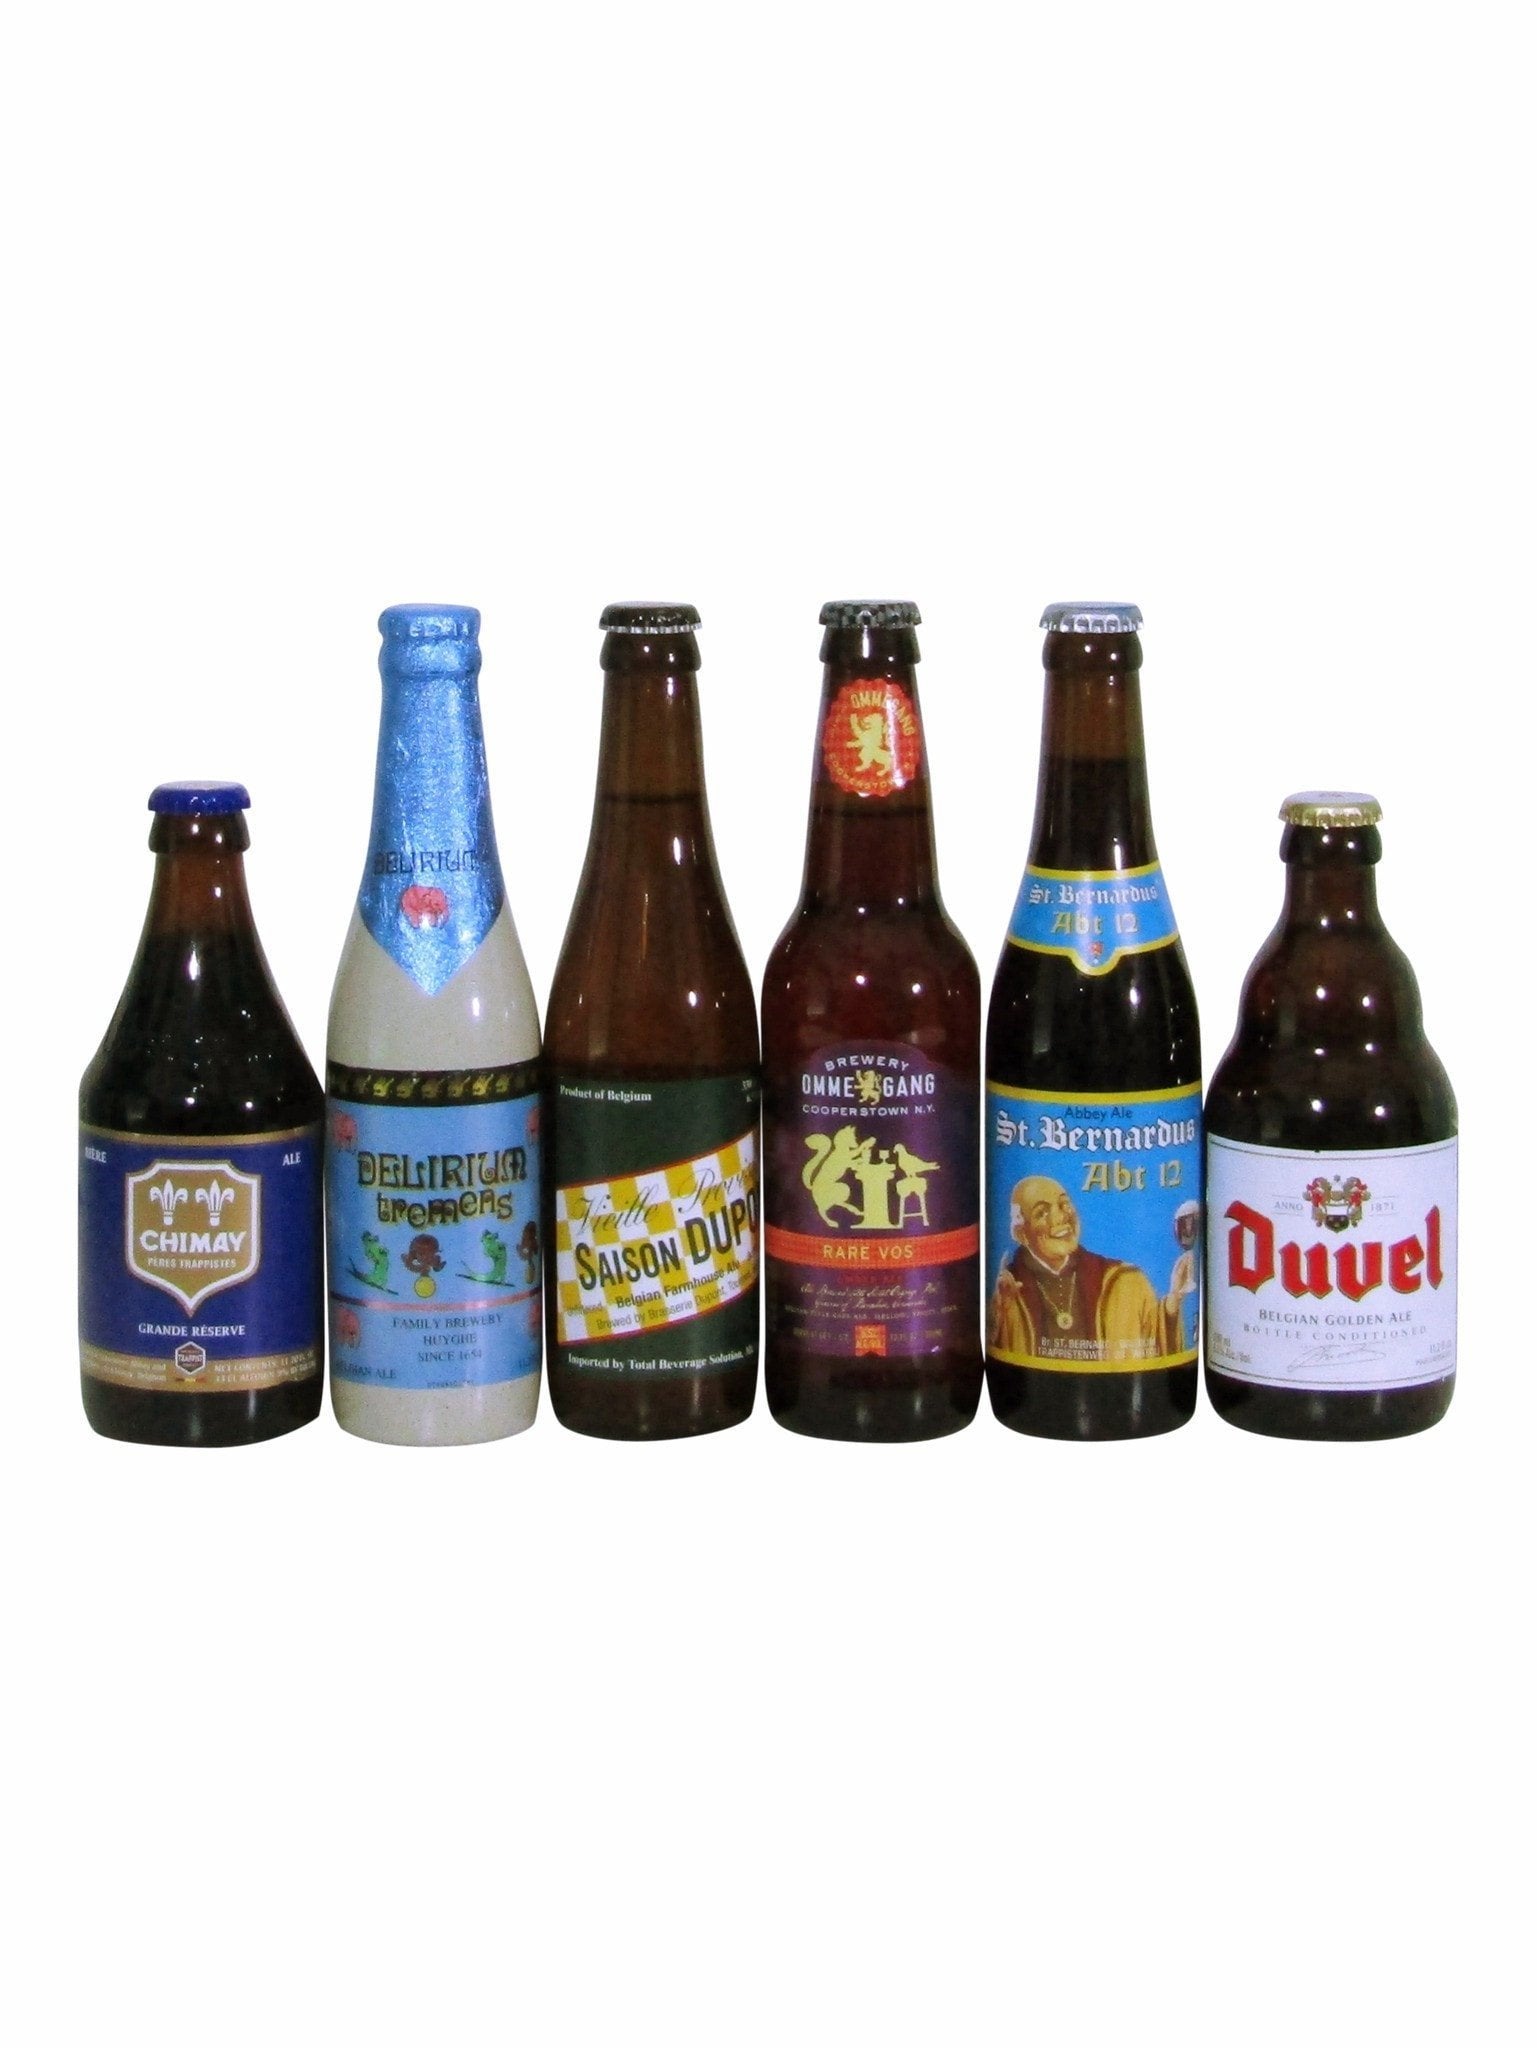 Belgian Beer Gift Basket, Belgian Beer Gifts, Beer Gift